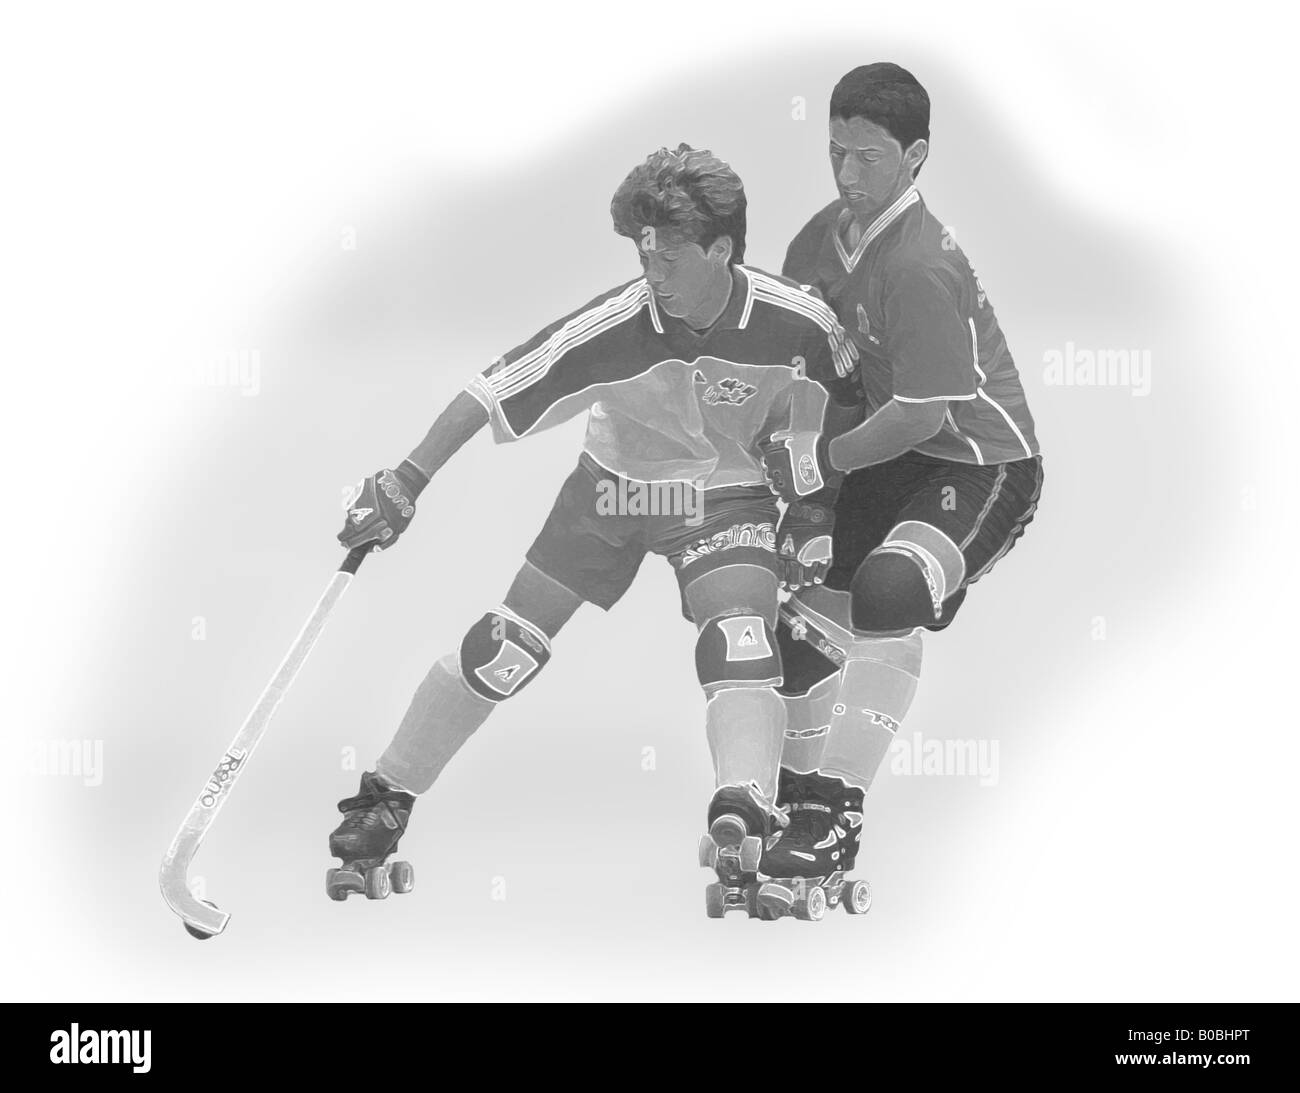 Hockey Patines Stockfotos und -bilder Kaufen - Alamy